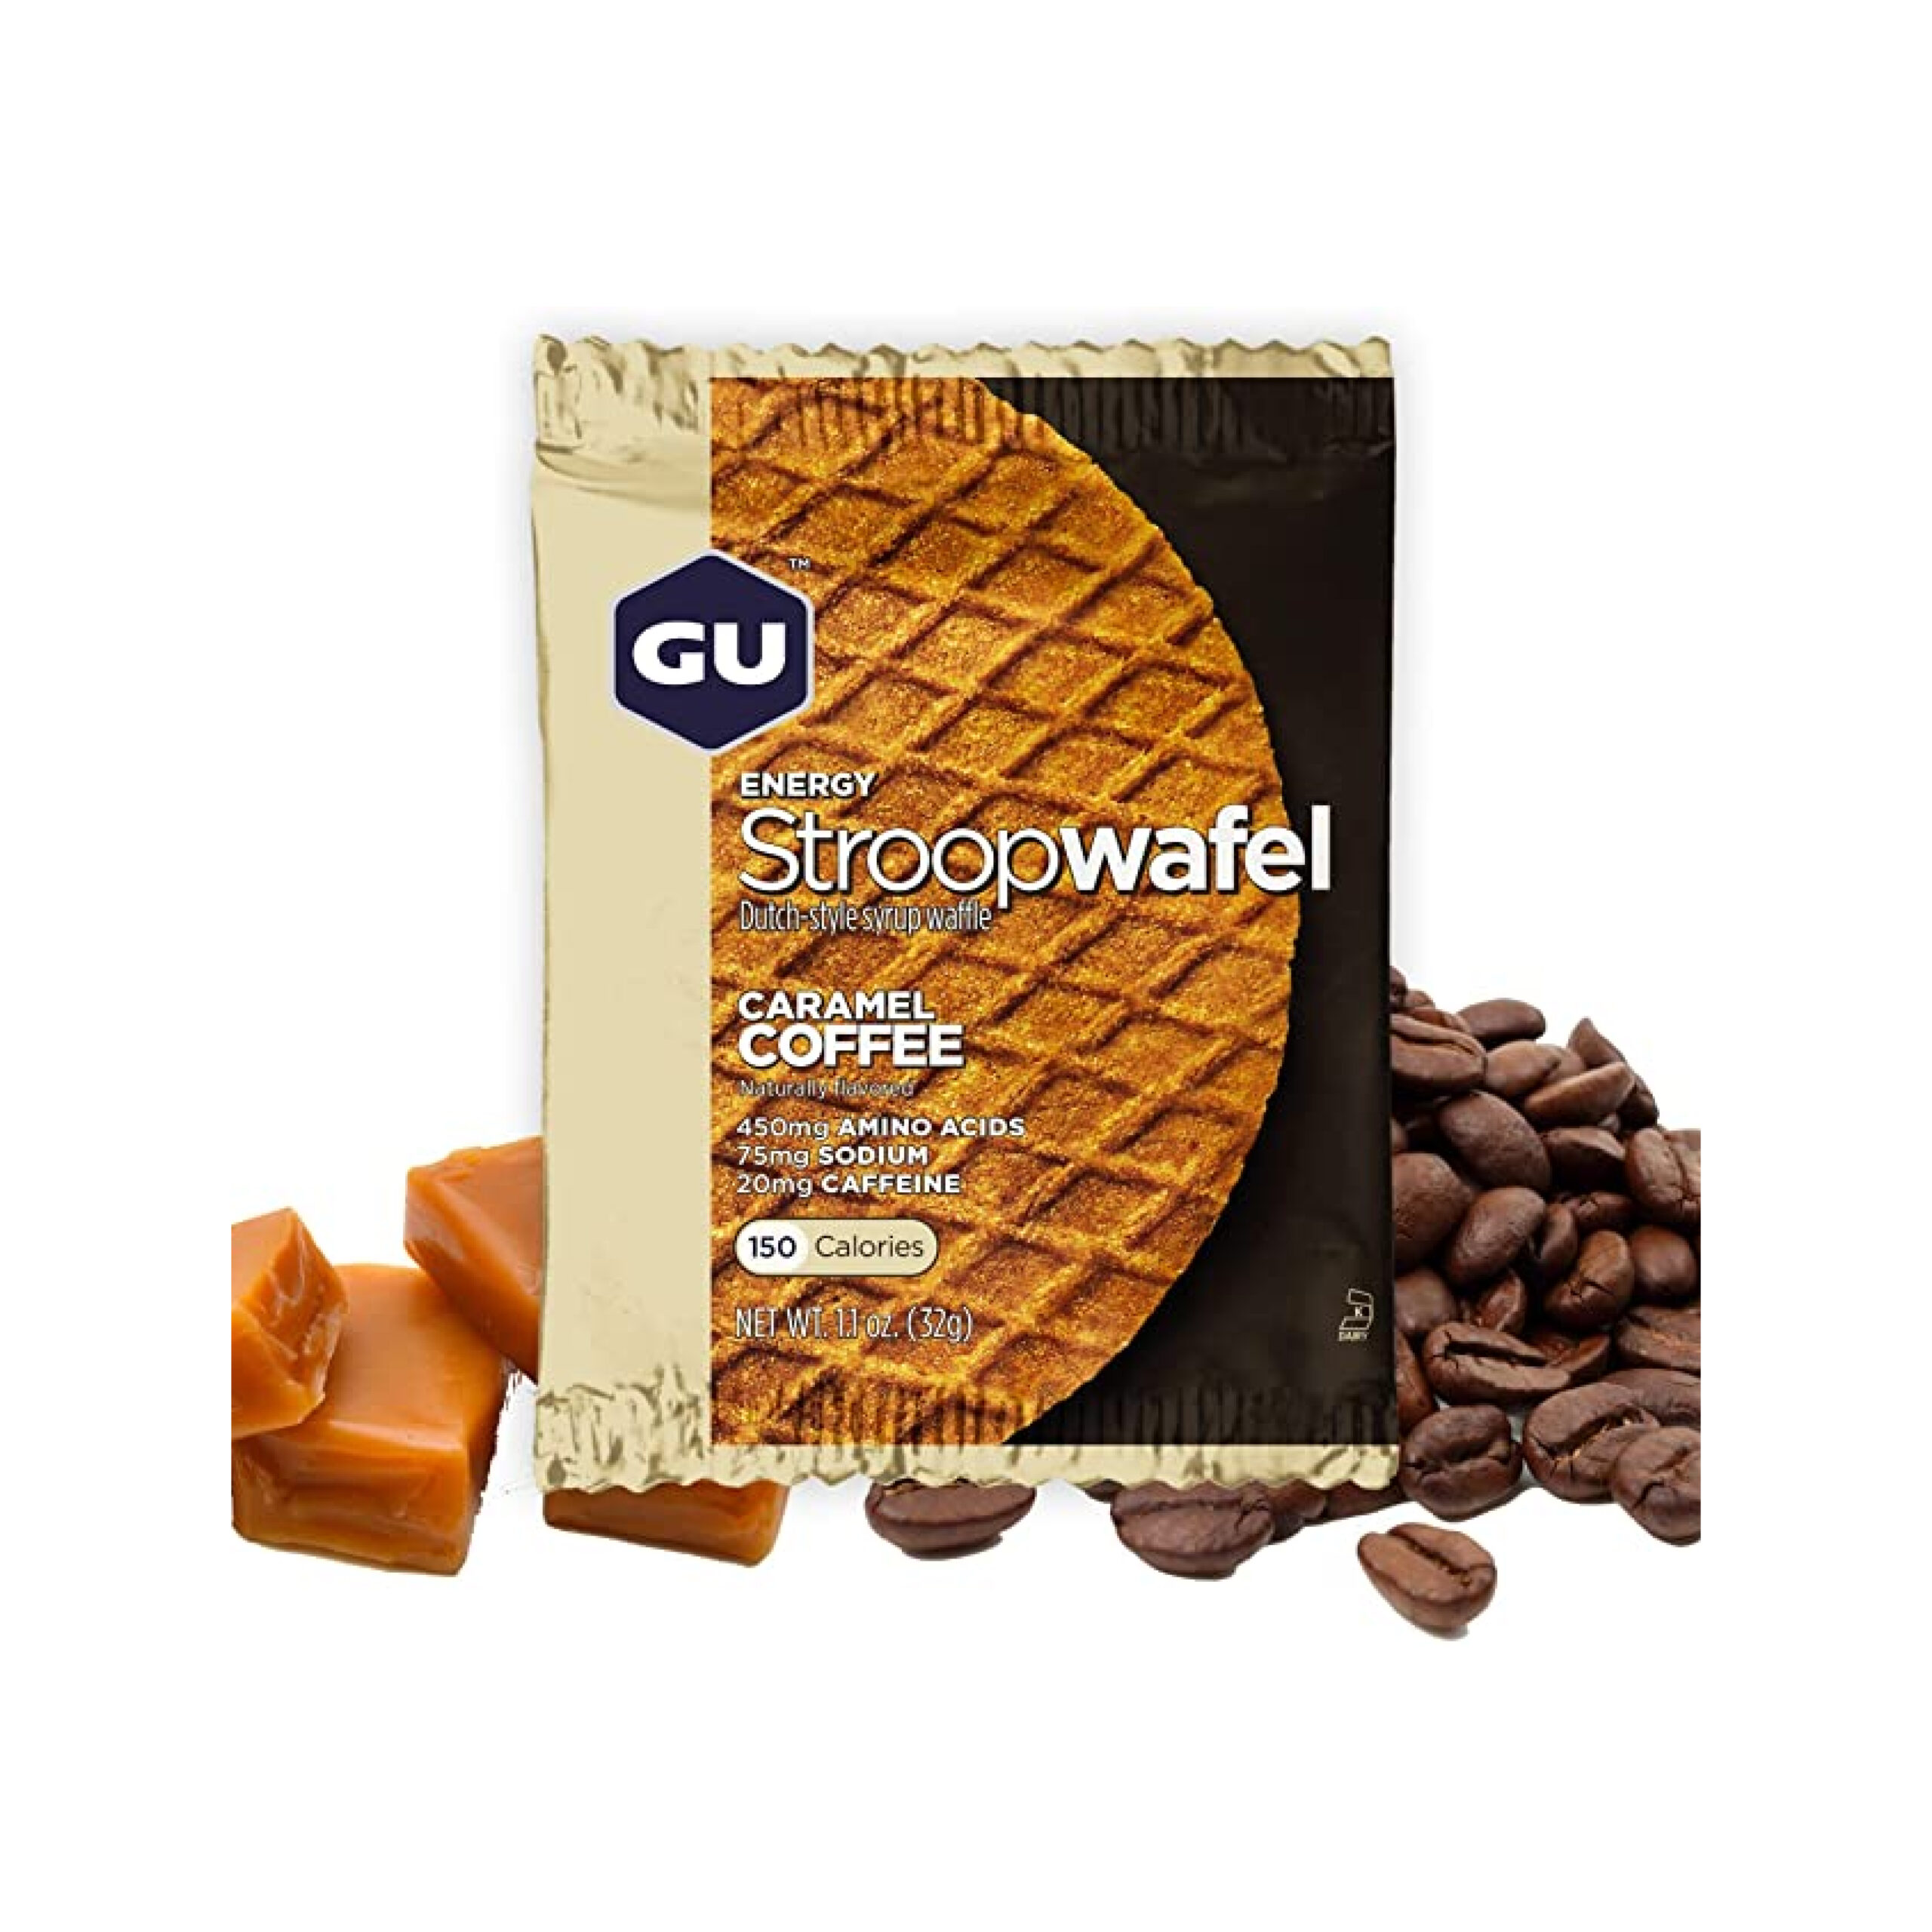 Galletas Energéticas Stroopwafel Caramel Coffee Caja 16 Gu Energy